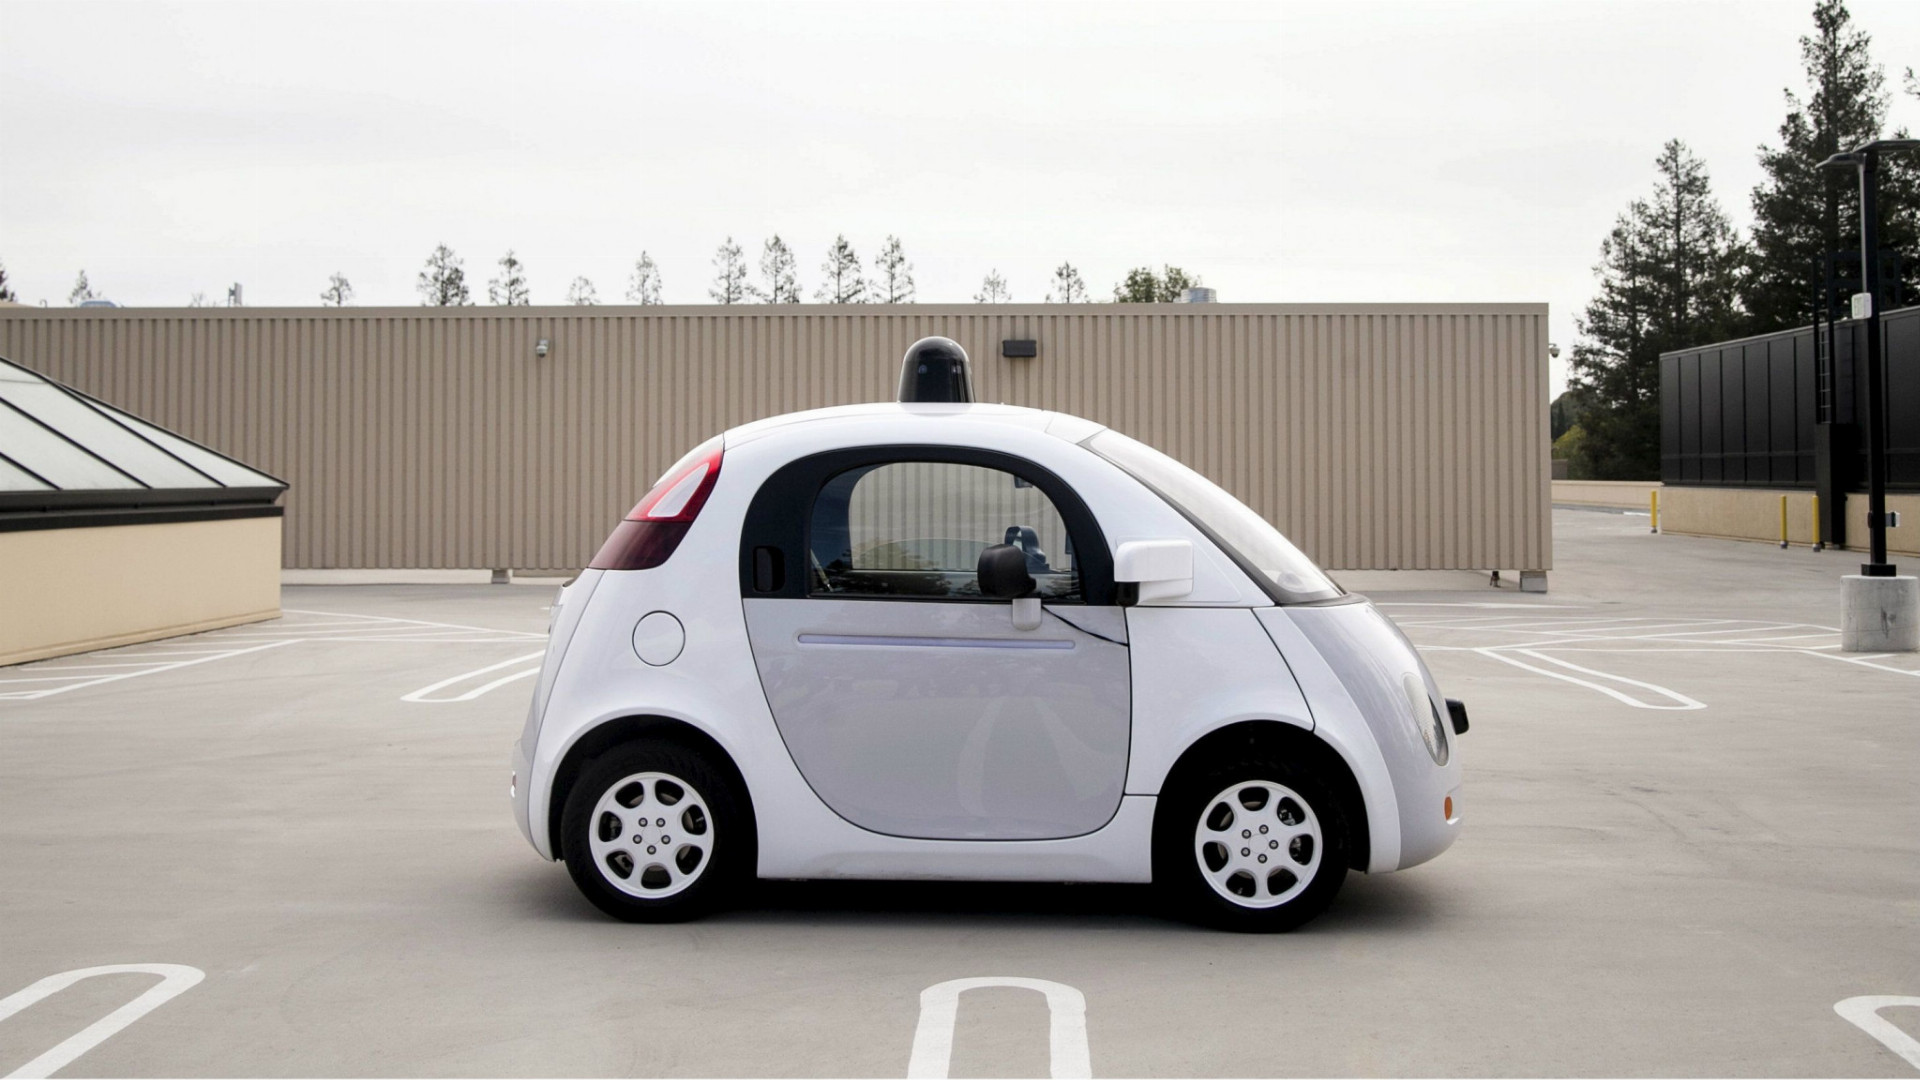 Jedným z lídrov v oblasti vývoja autonómnych vozidiel je americký Google, ktorý takéto autá už testuje.